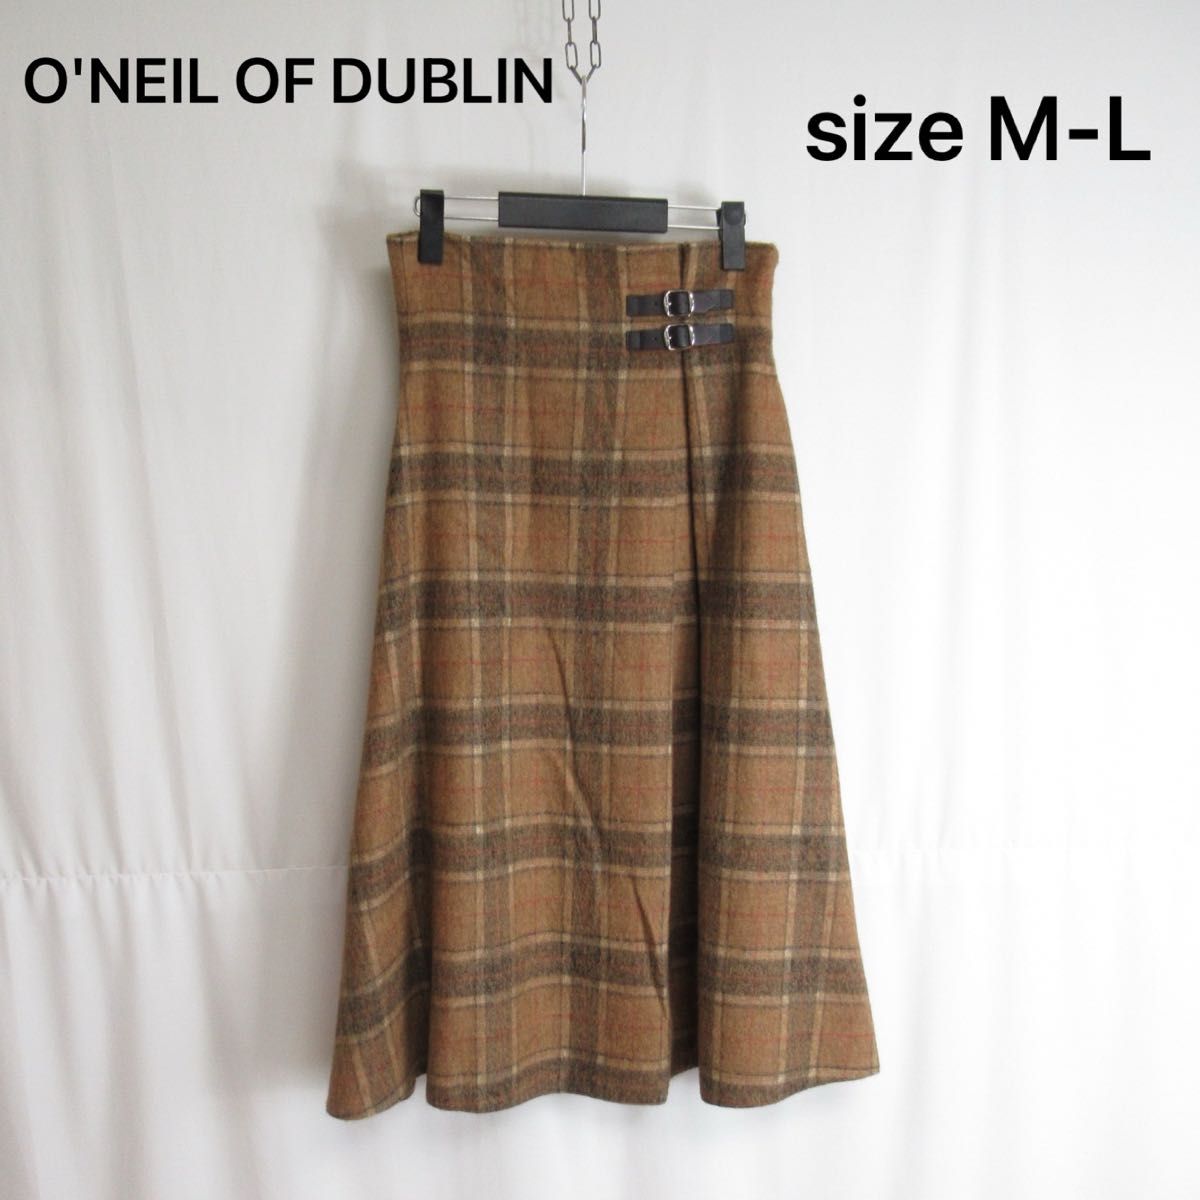 O'NEIL OF DUBLIN デザイン チェック ロング スカート オニールオブダブリン ボトムス アイルランド製 42